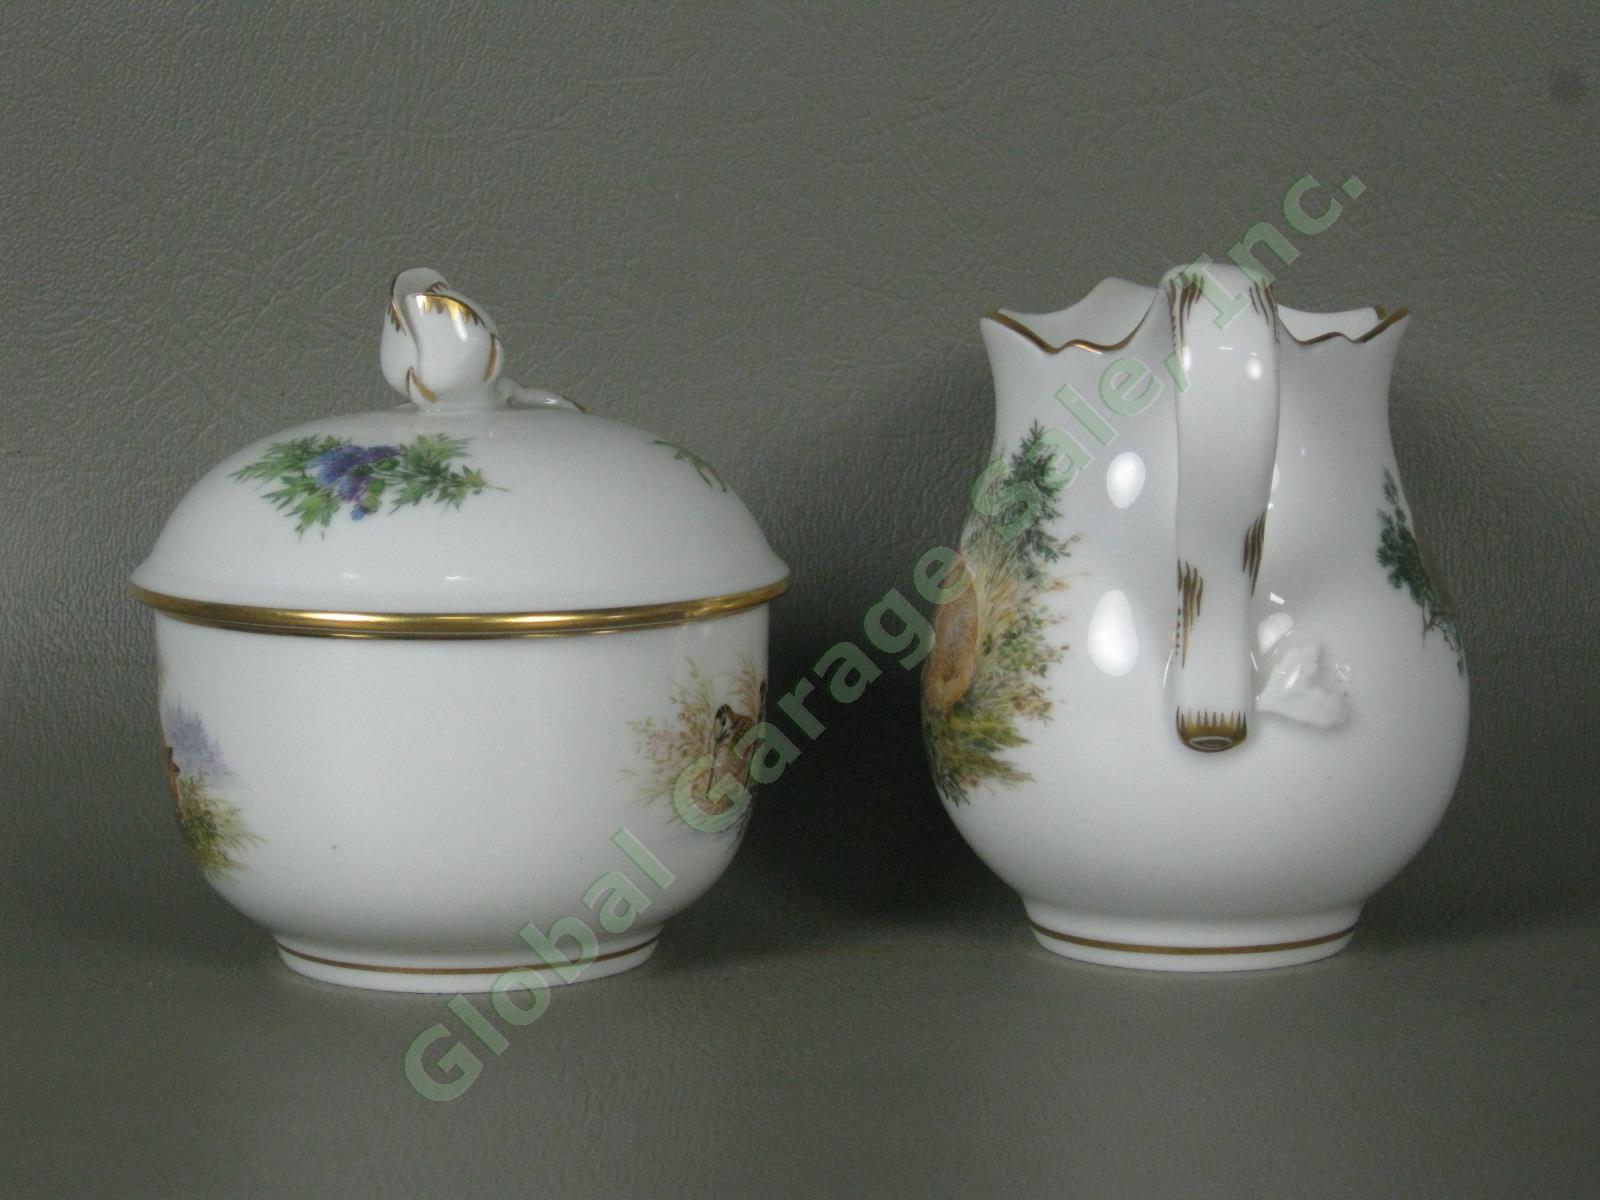 RARE Antique Meissen German Porcelain Wildlife Coffee Service Tea Set Pot Cups + 12